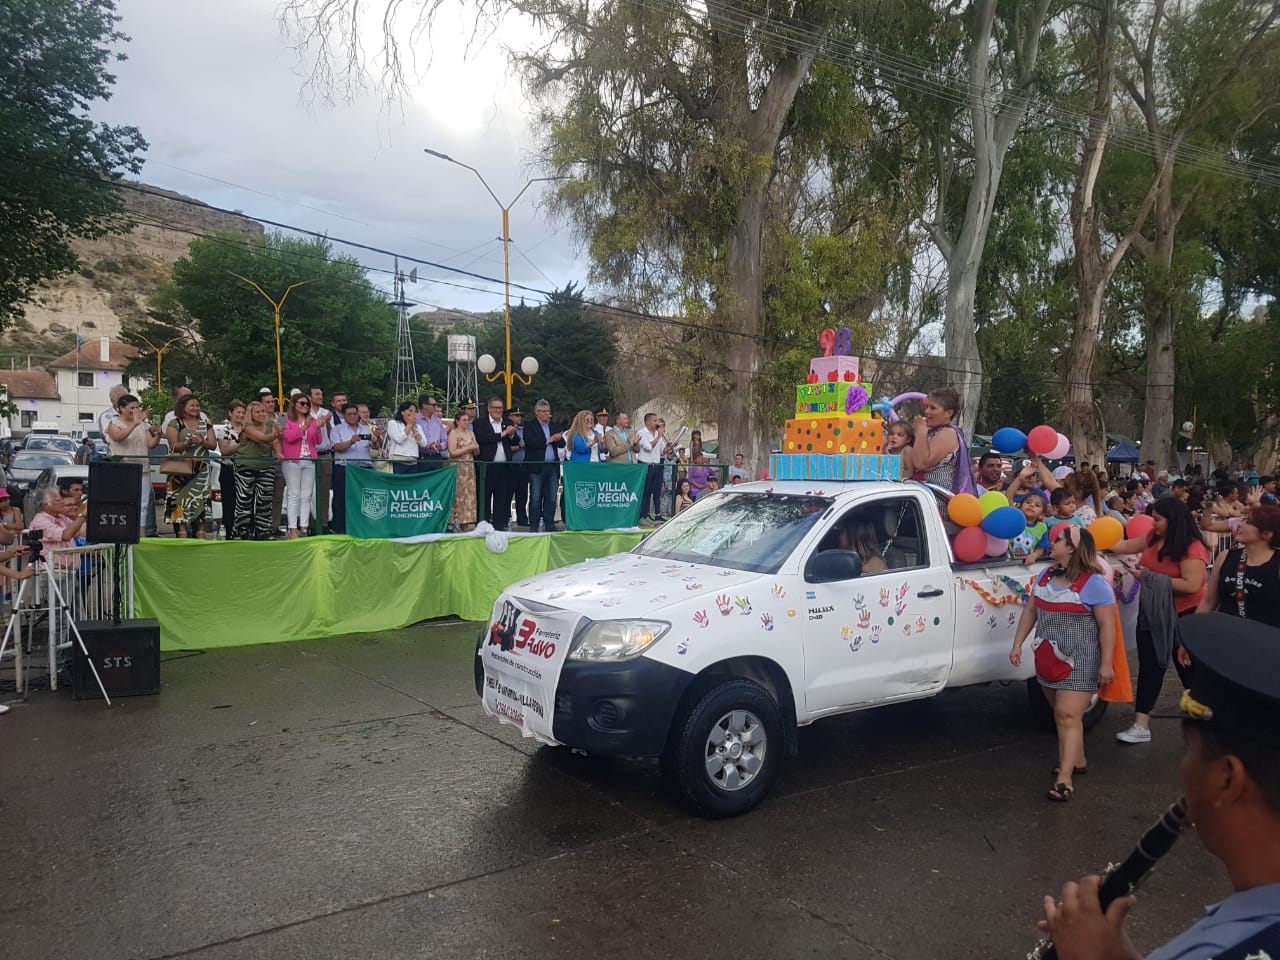 La lluvia no impidió disfrutar del tradicional desfile en el cierre del aniversario de Regina. (Fotos Néstor Salas)